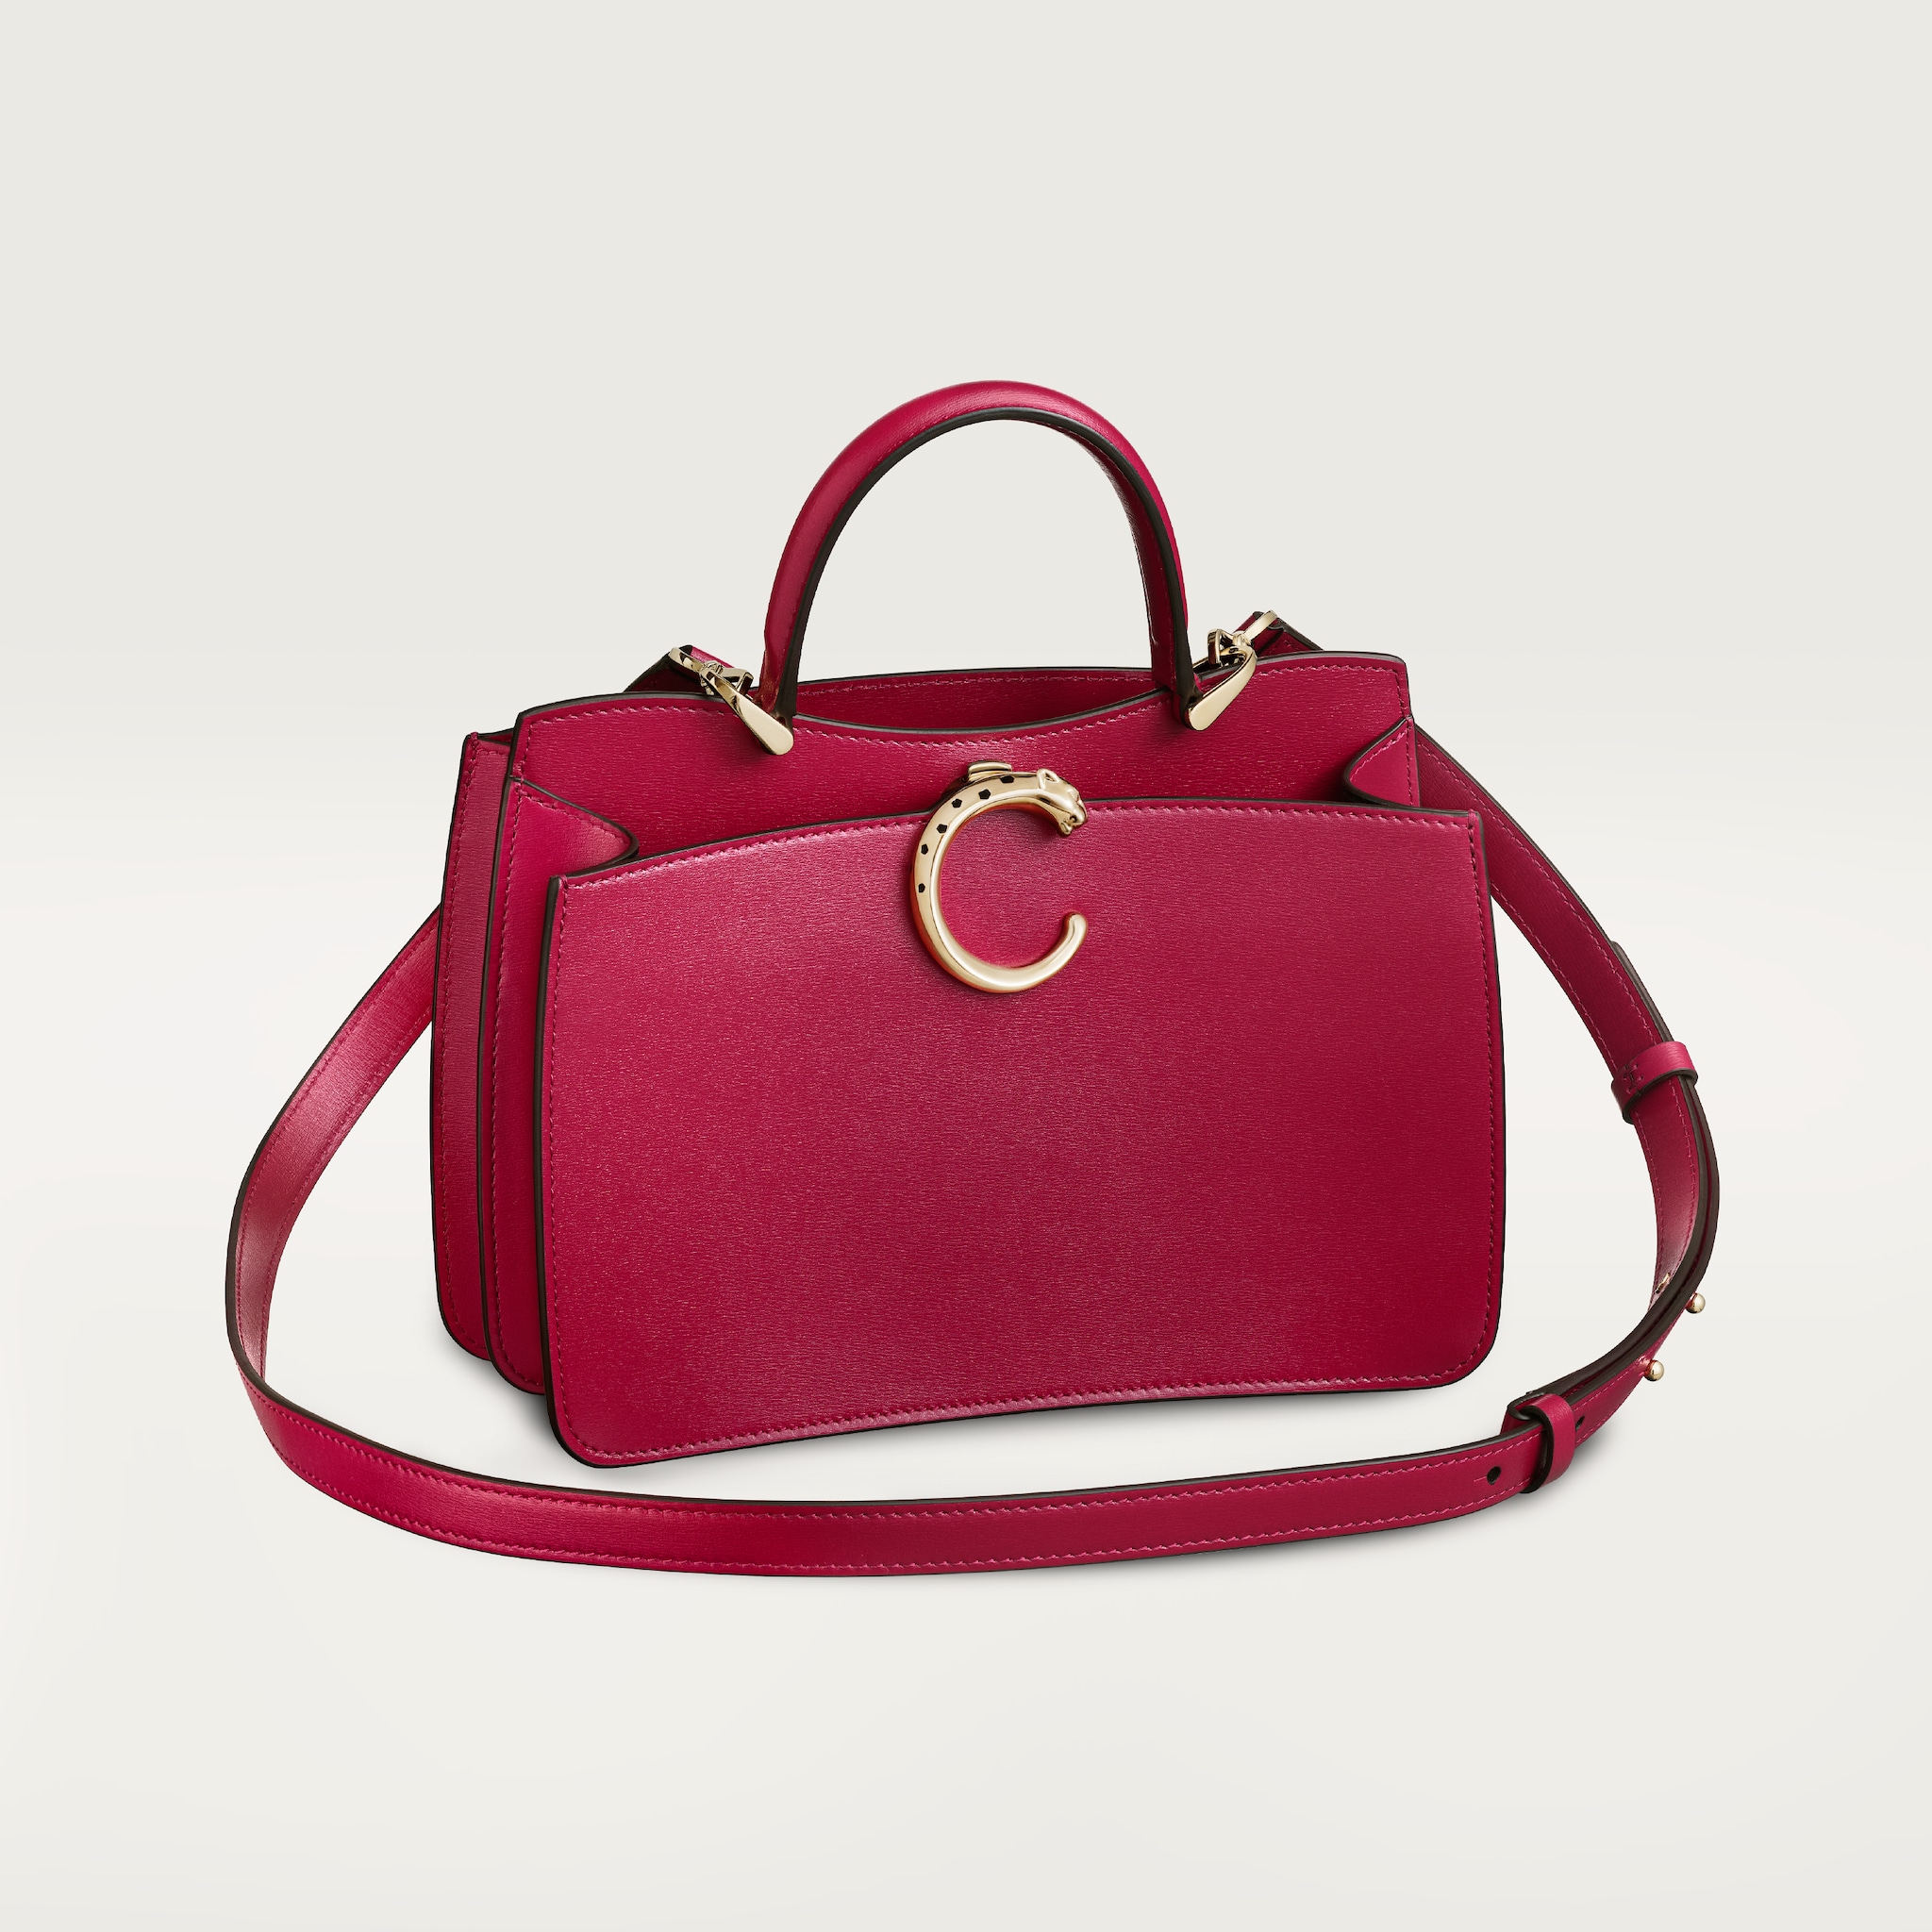 Handle bag mini model, Panthère de CartierCherry red calfskin, golden finish